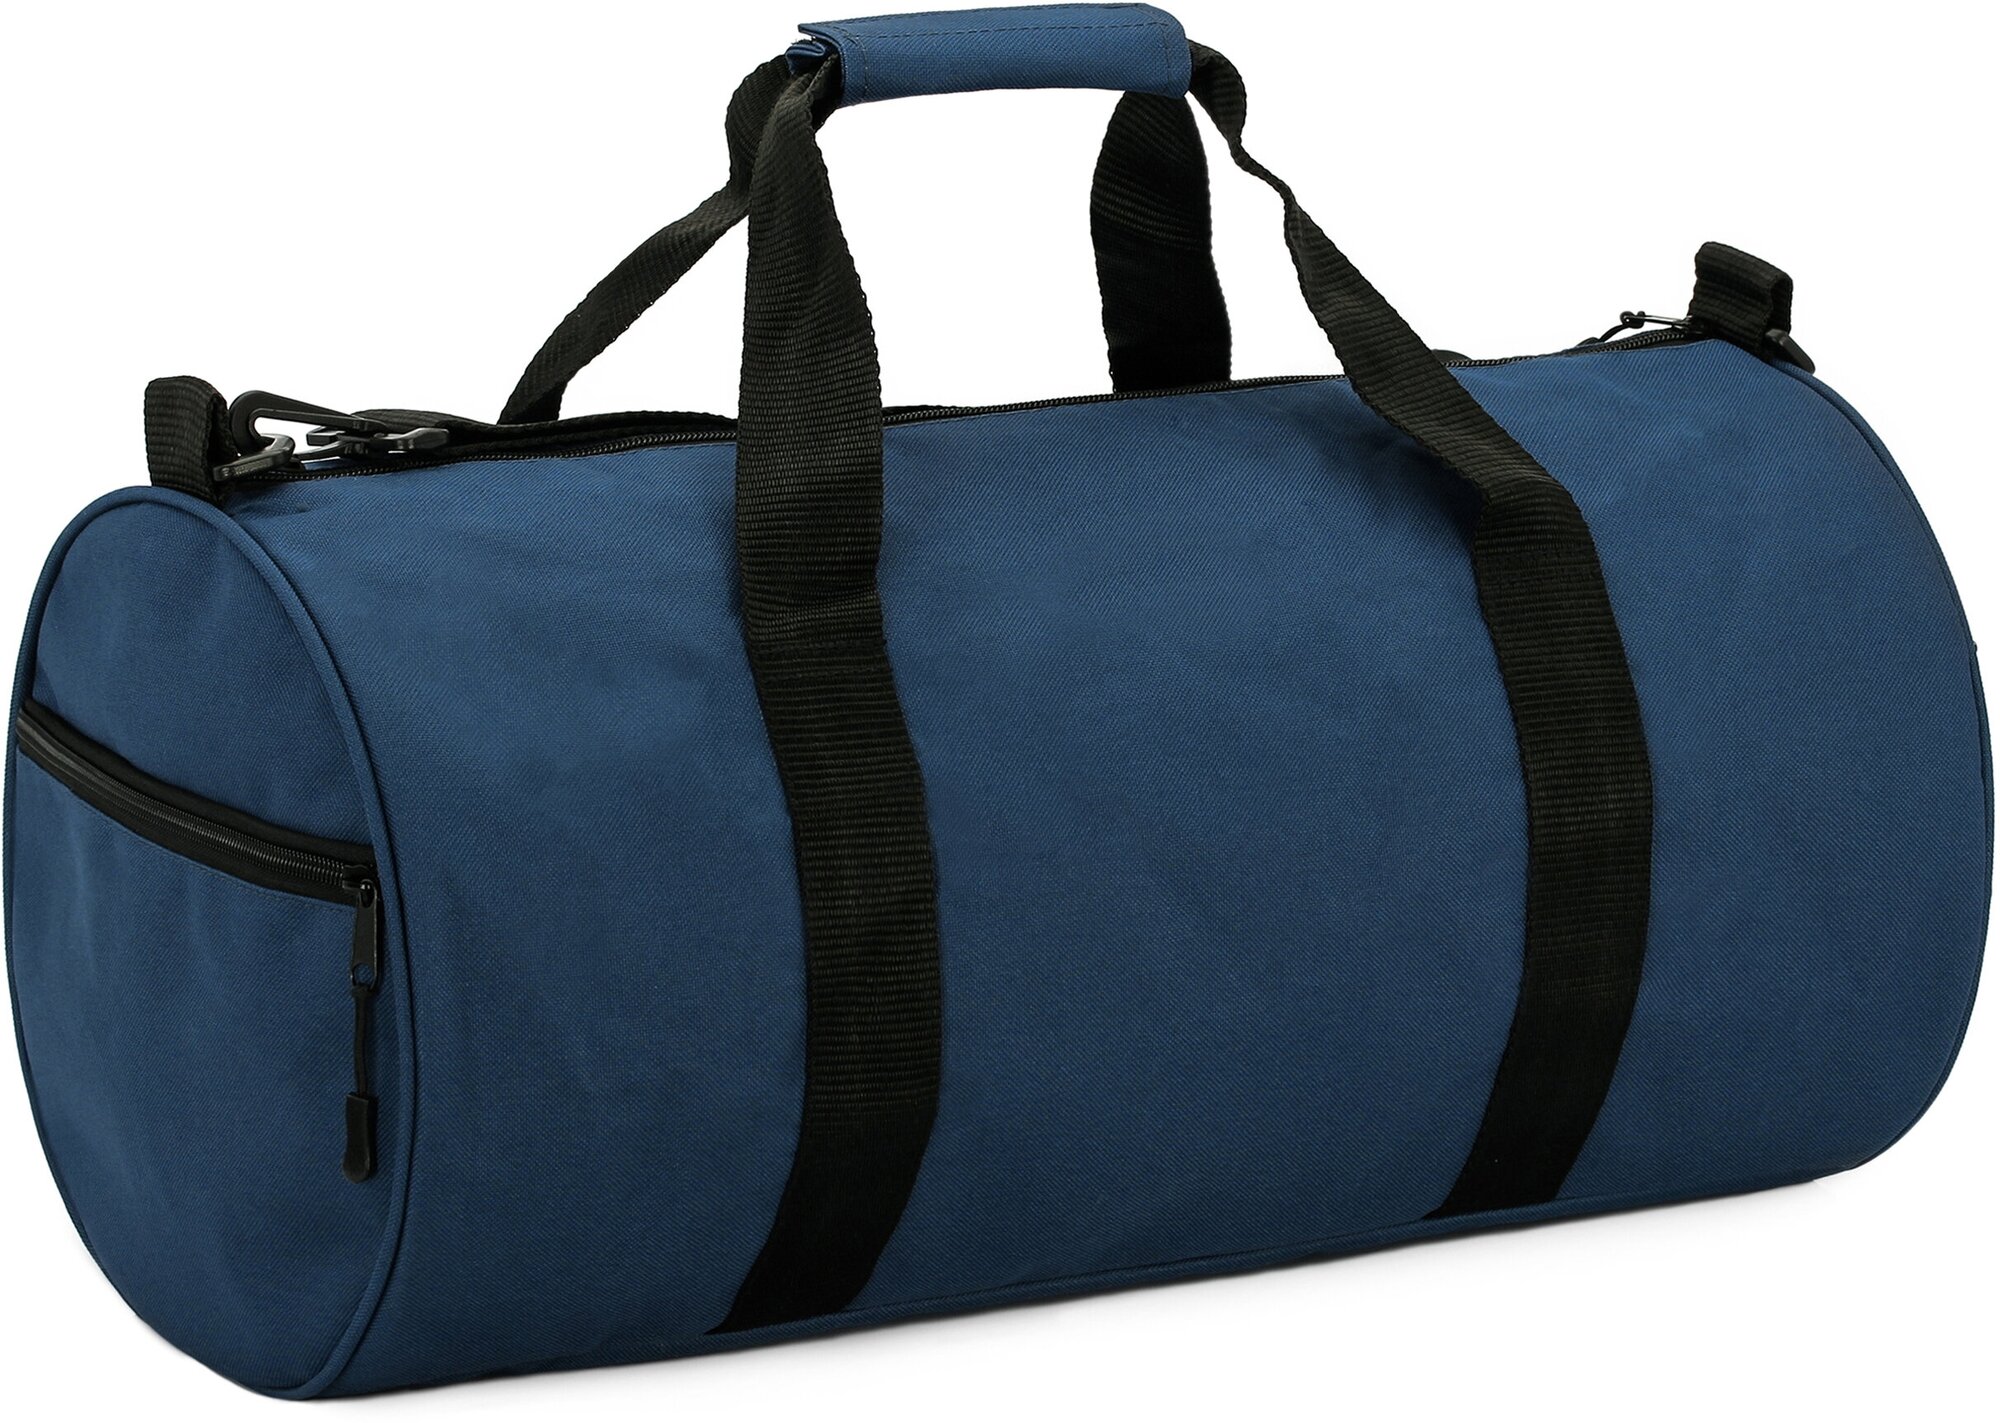 Сумка дорожная TOPROCK "Barrel bag" сумка спортивная, темно-синяя - фотография № 2